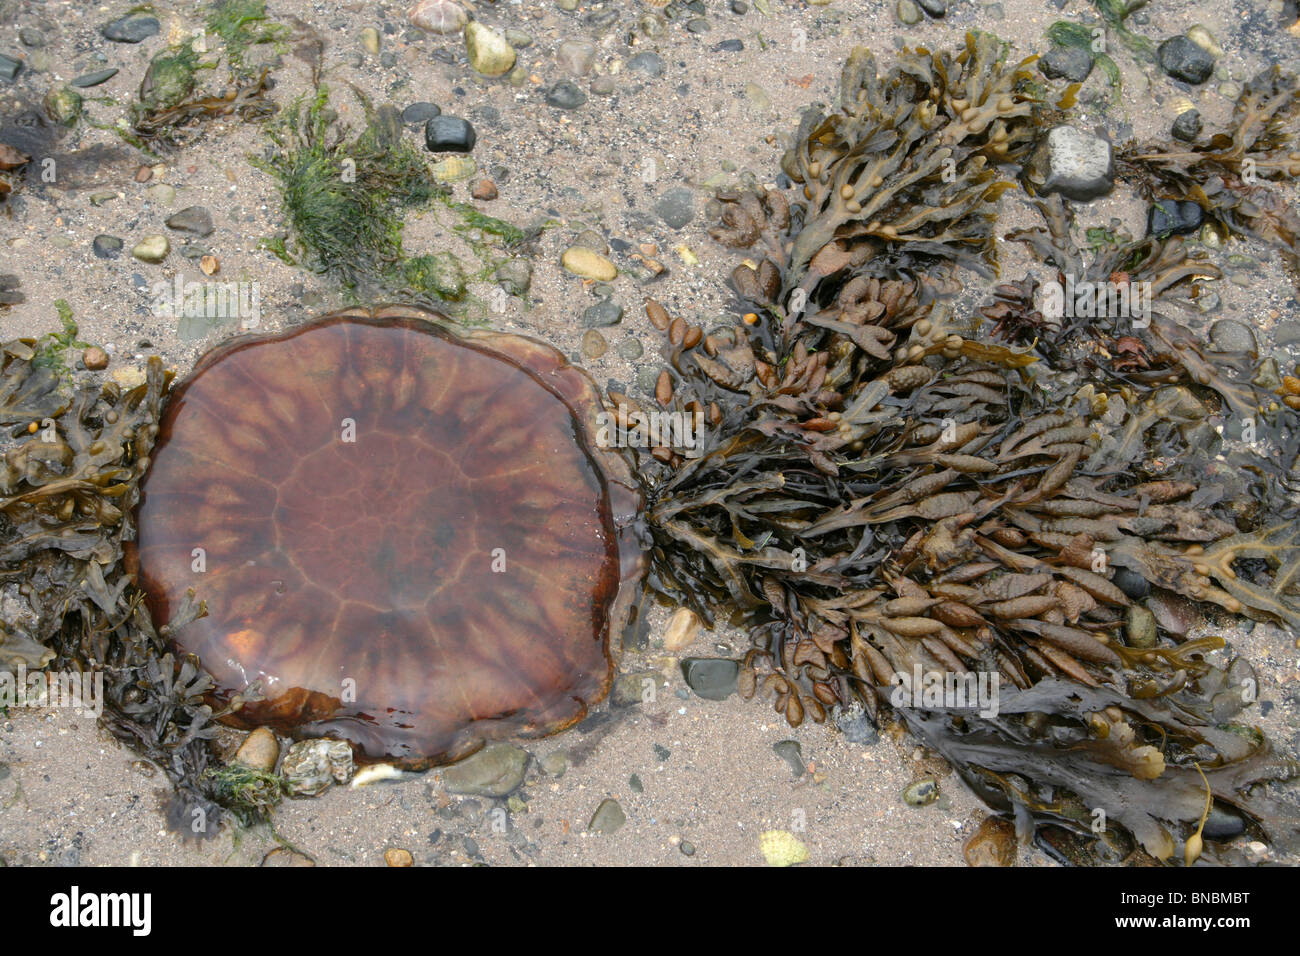 Méduse à crinière de lion Cyanea capillata échoués sur la plage, Beaumaris Anglesey, UK Banque D'Images